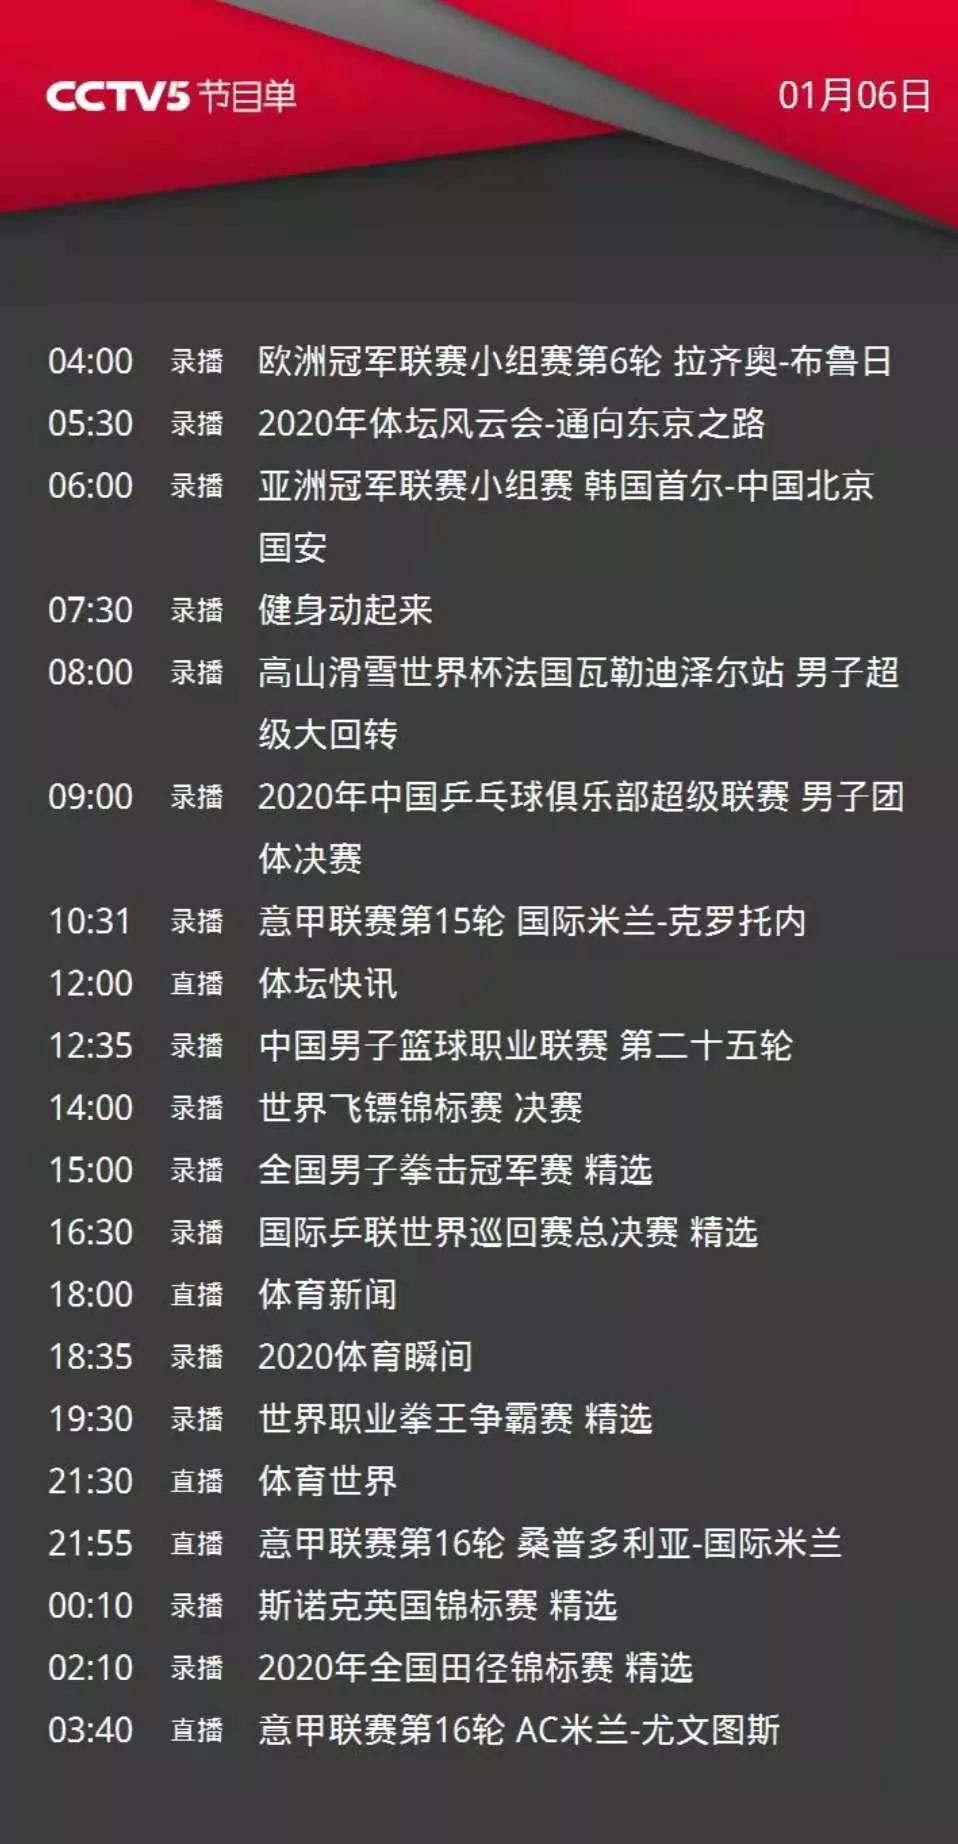 国外意甲在哪个频道(CCTV5今日节目单:21:55直播意甲国际米兰)